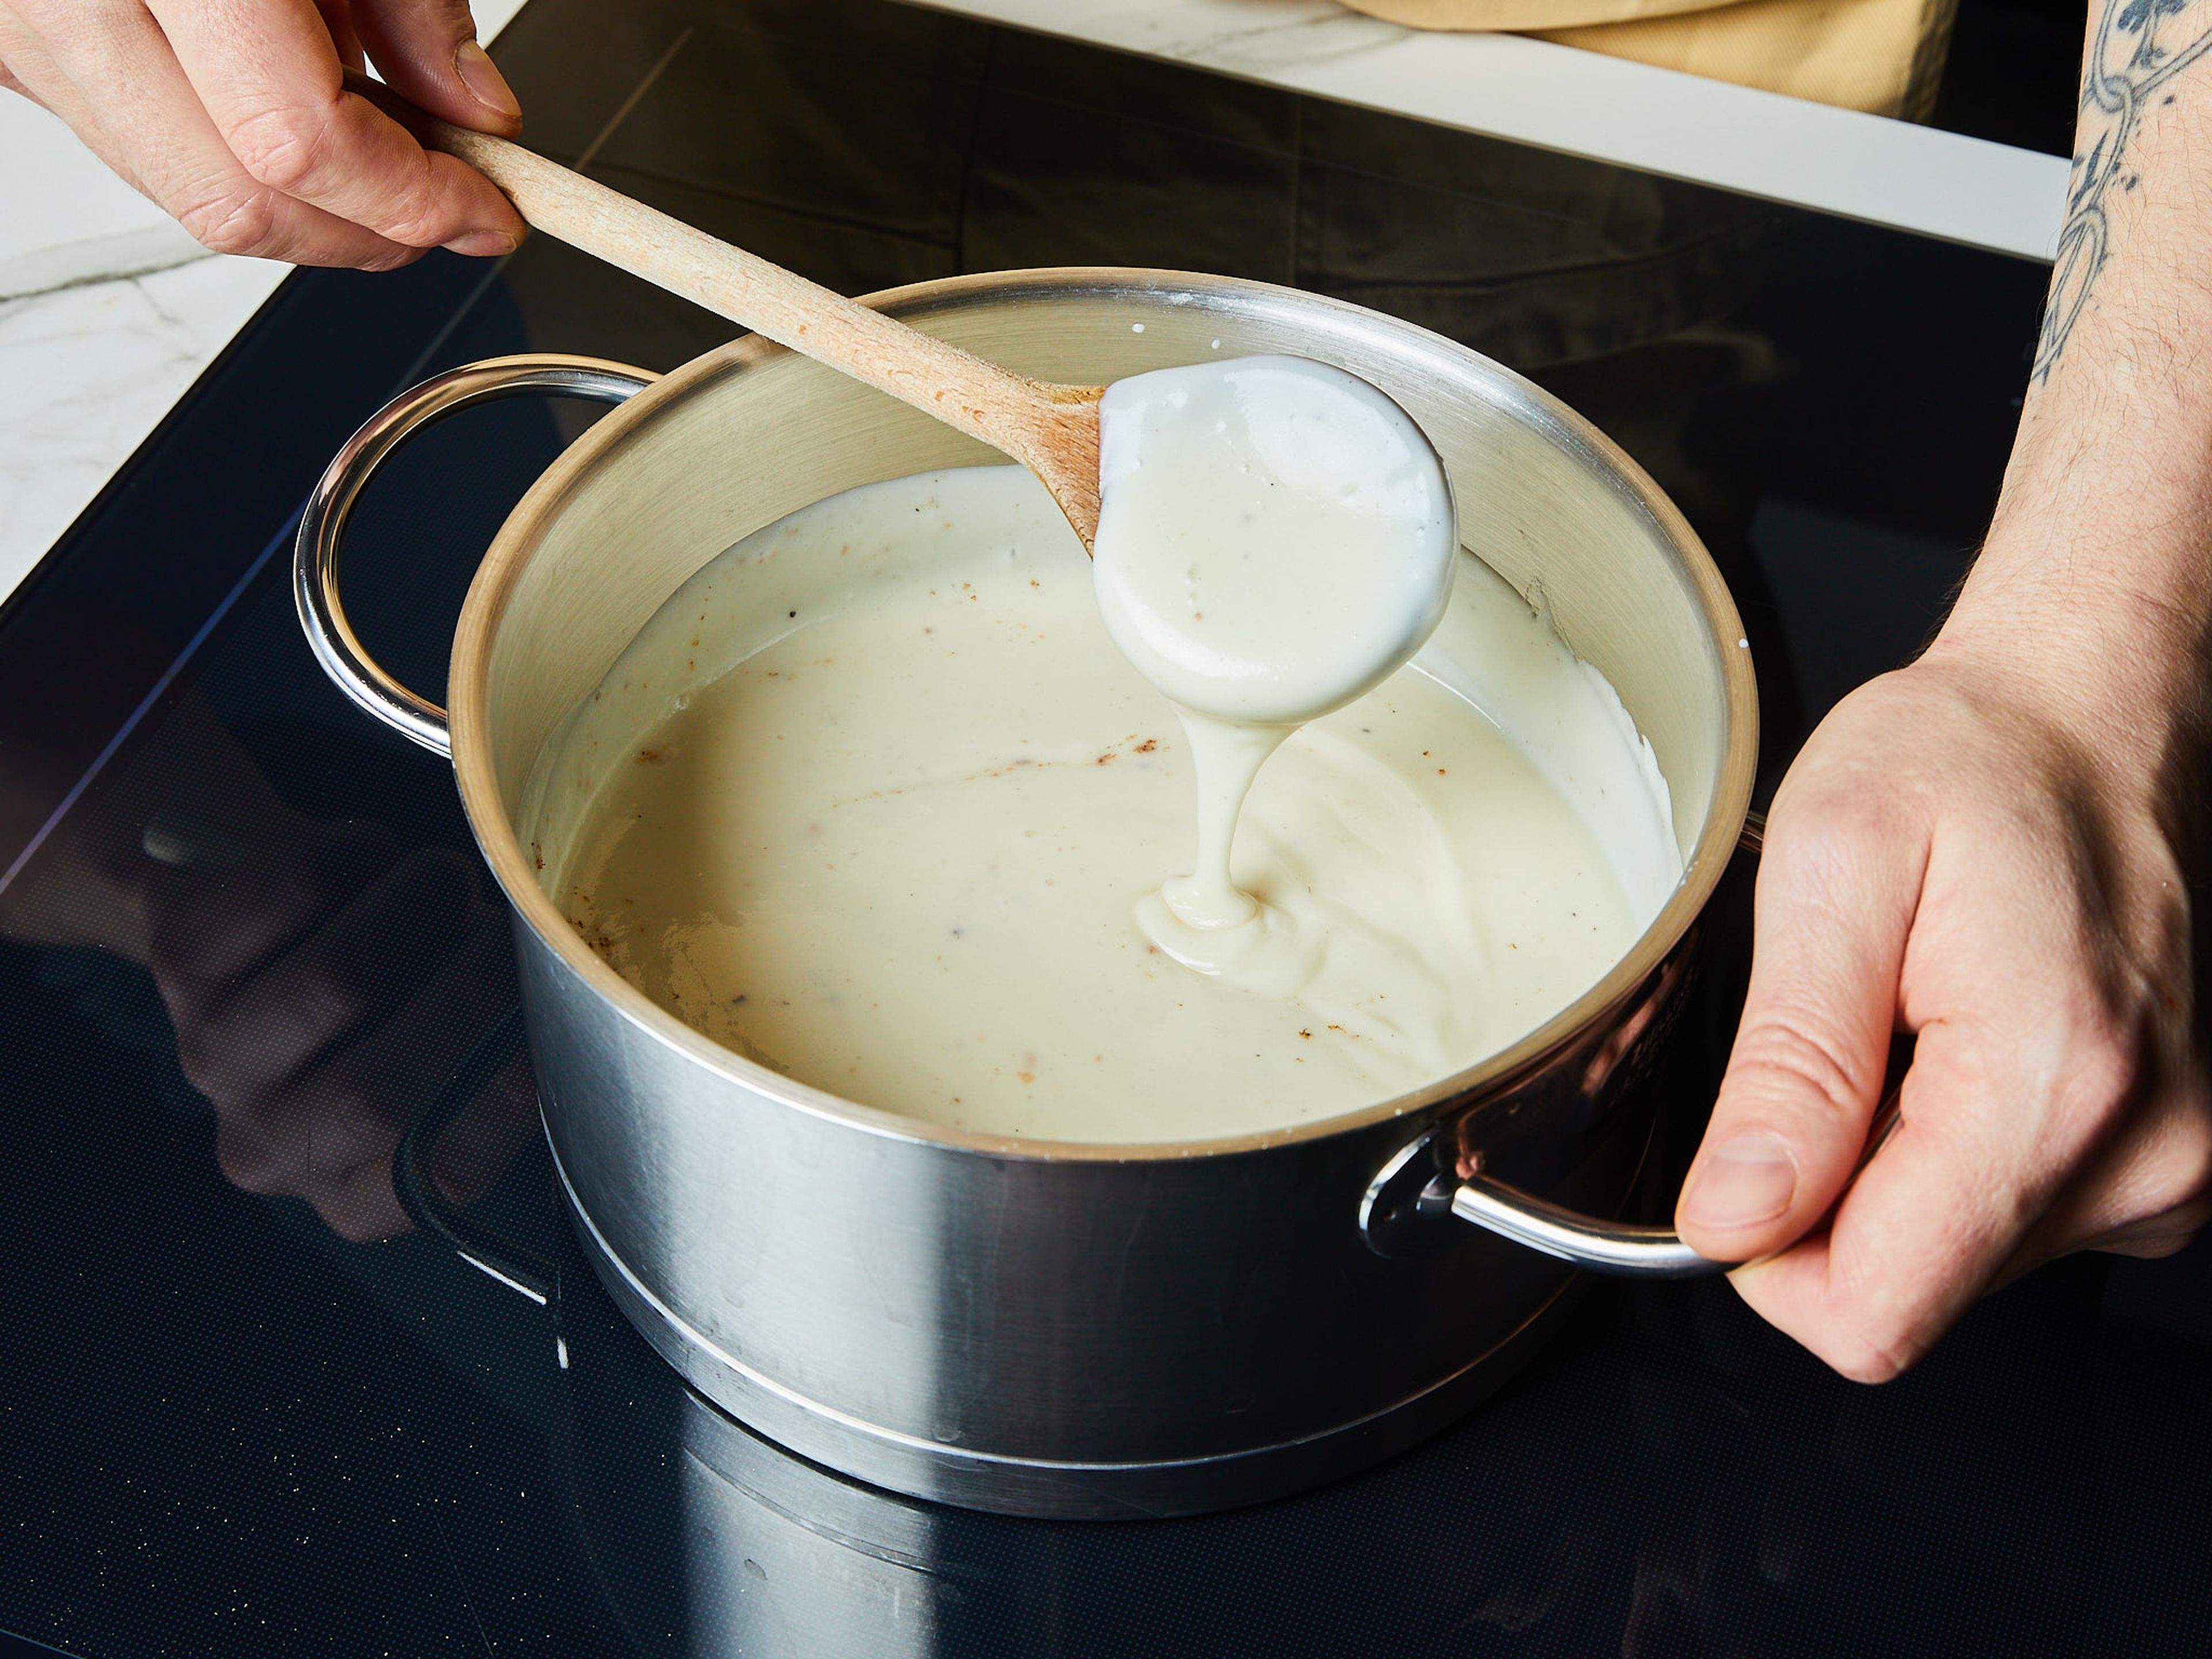 Den Backofen für die Lasagne auf 200°C Umluft oder 220°C Ober-/Unterhitze vorheizen. Für die Béchamelsauce die Butter in einem kleinen Topf schmelzen, das Mehl dazugeben und unter Rühren bräunen. Nach und nach die kalte Milch unter ständigem Rühren zugeben, dann die Hitze reduzieren und ca. 5-8 Min. köcheln lassen. Mit Muskatnuss, Salz und Pfeffer abschmecken.